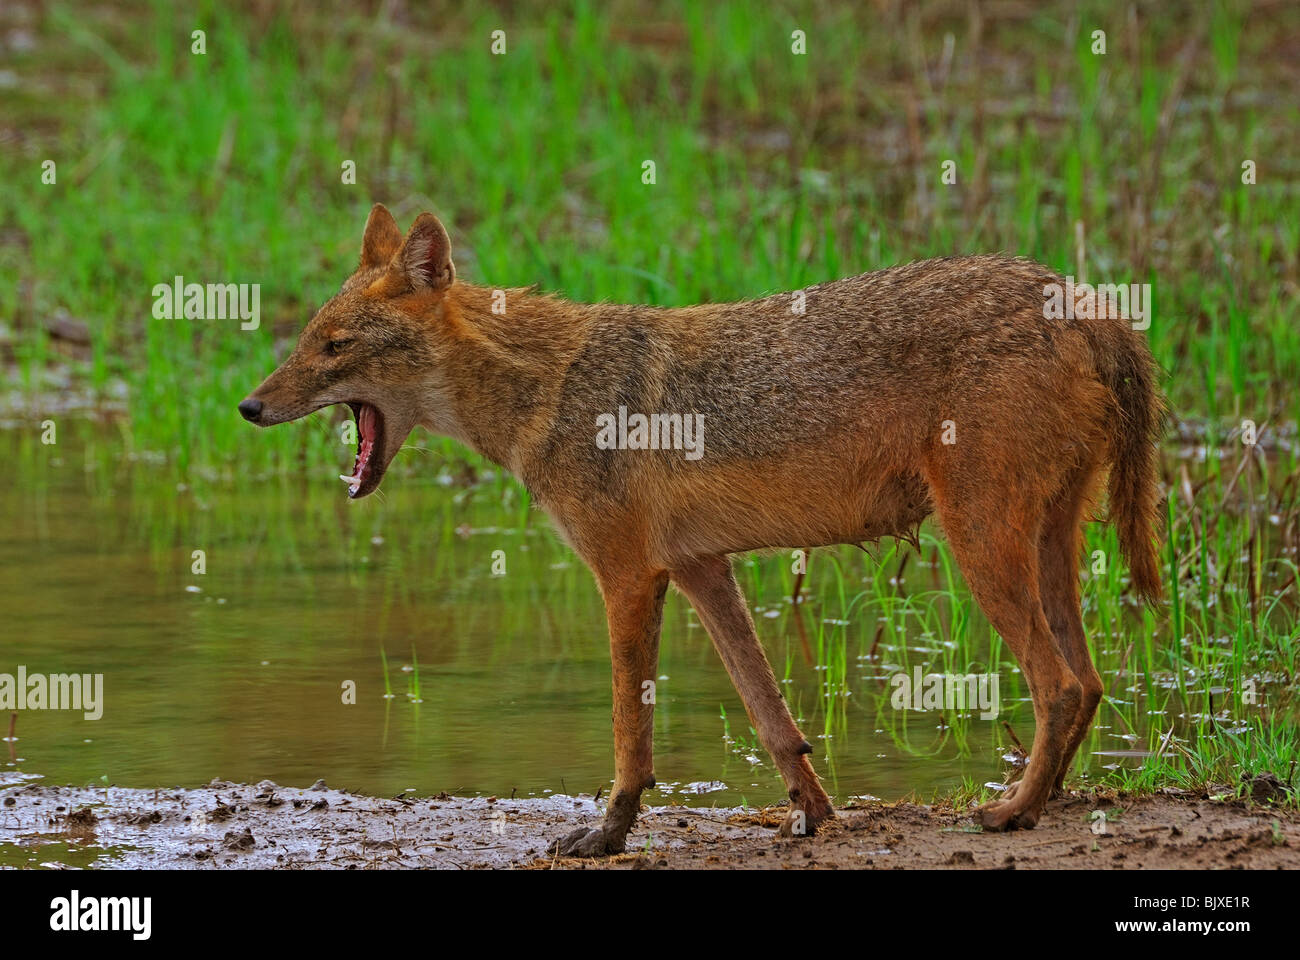 jackal yawning Stock Photo